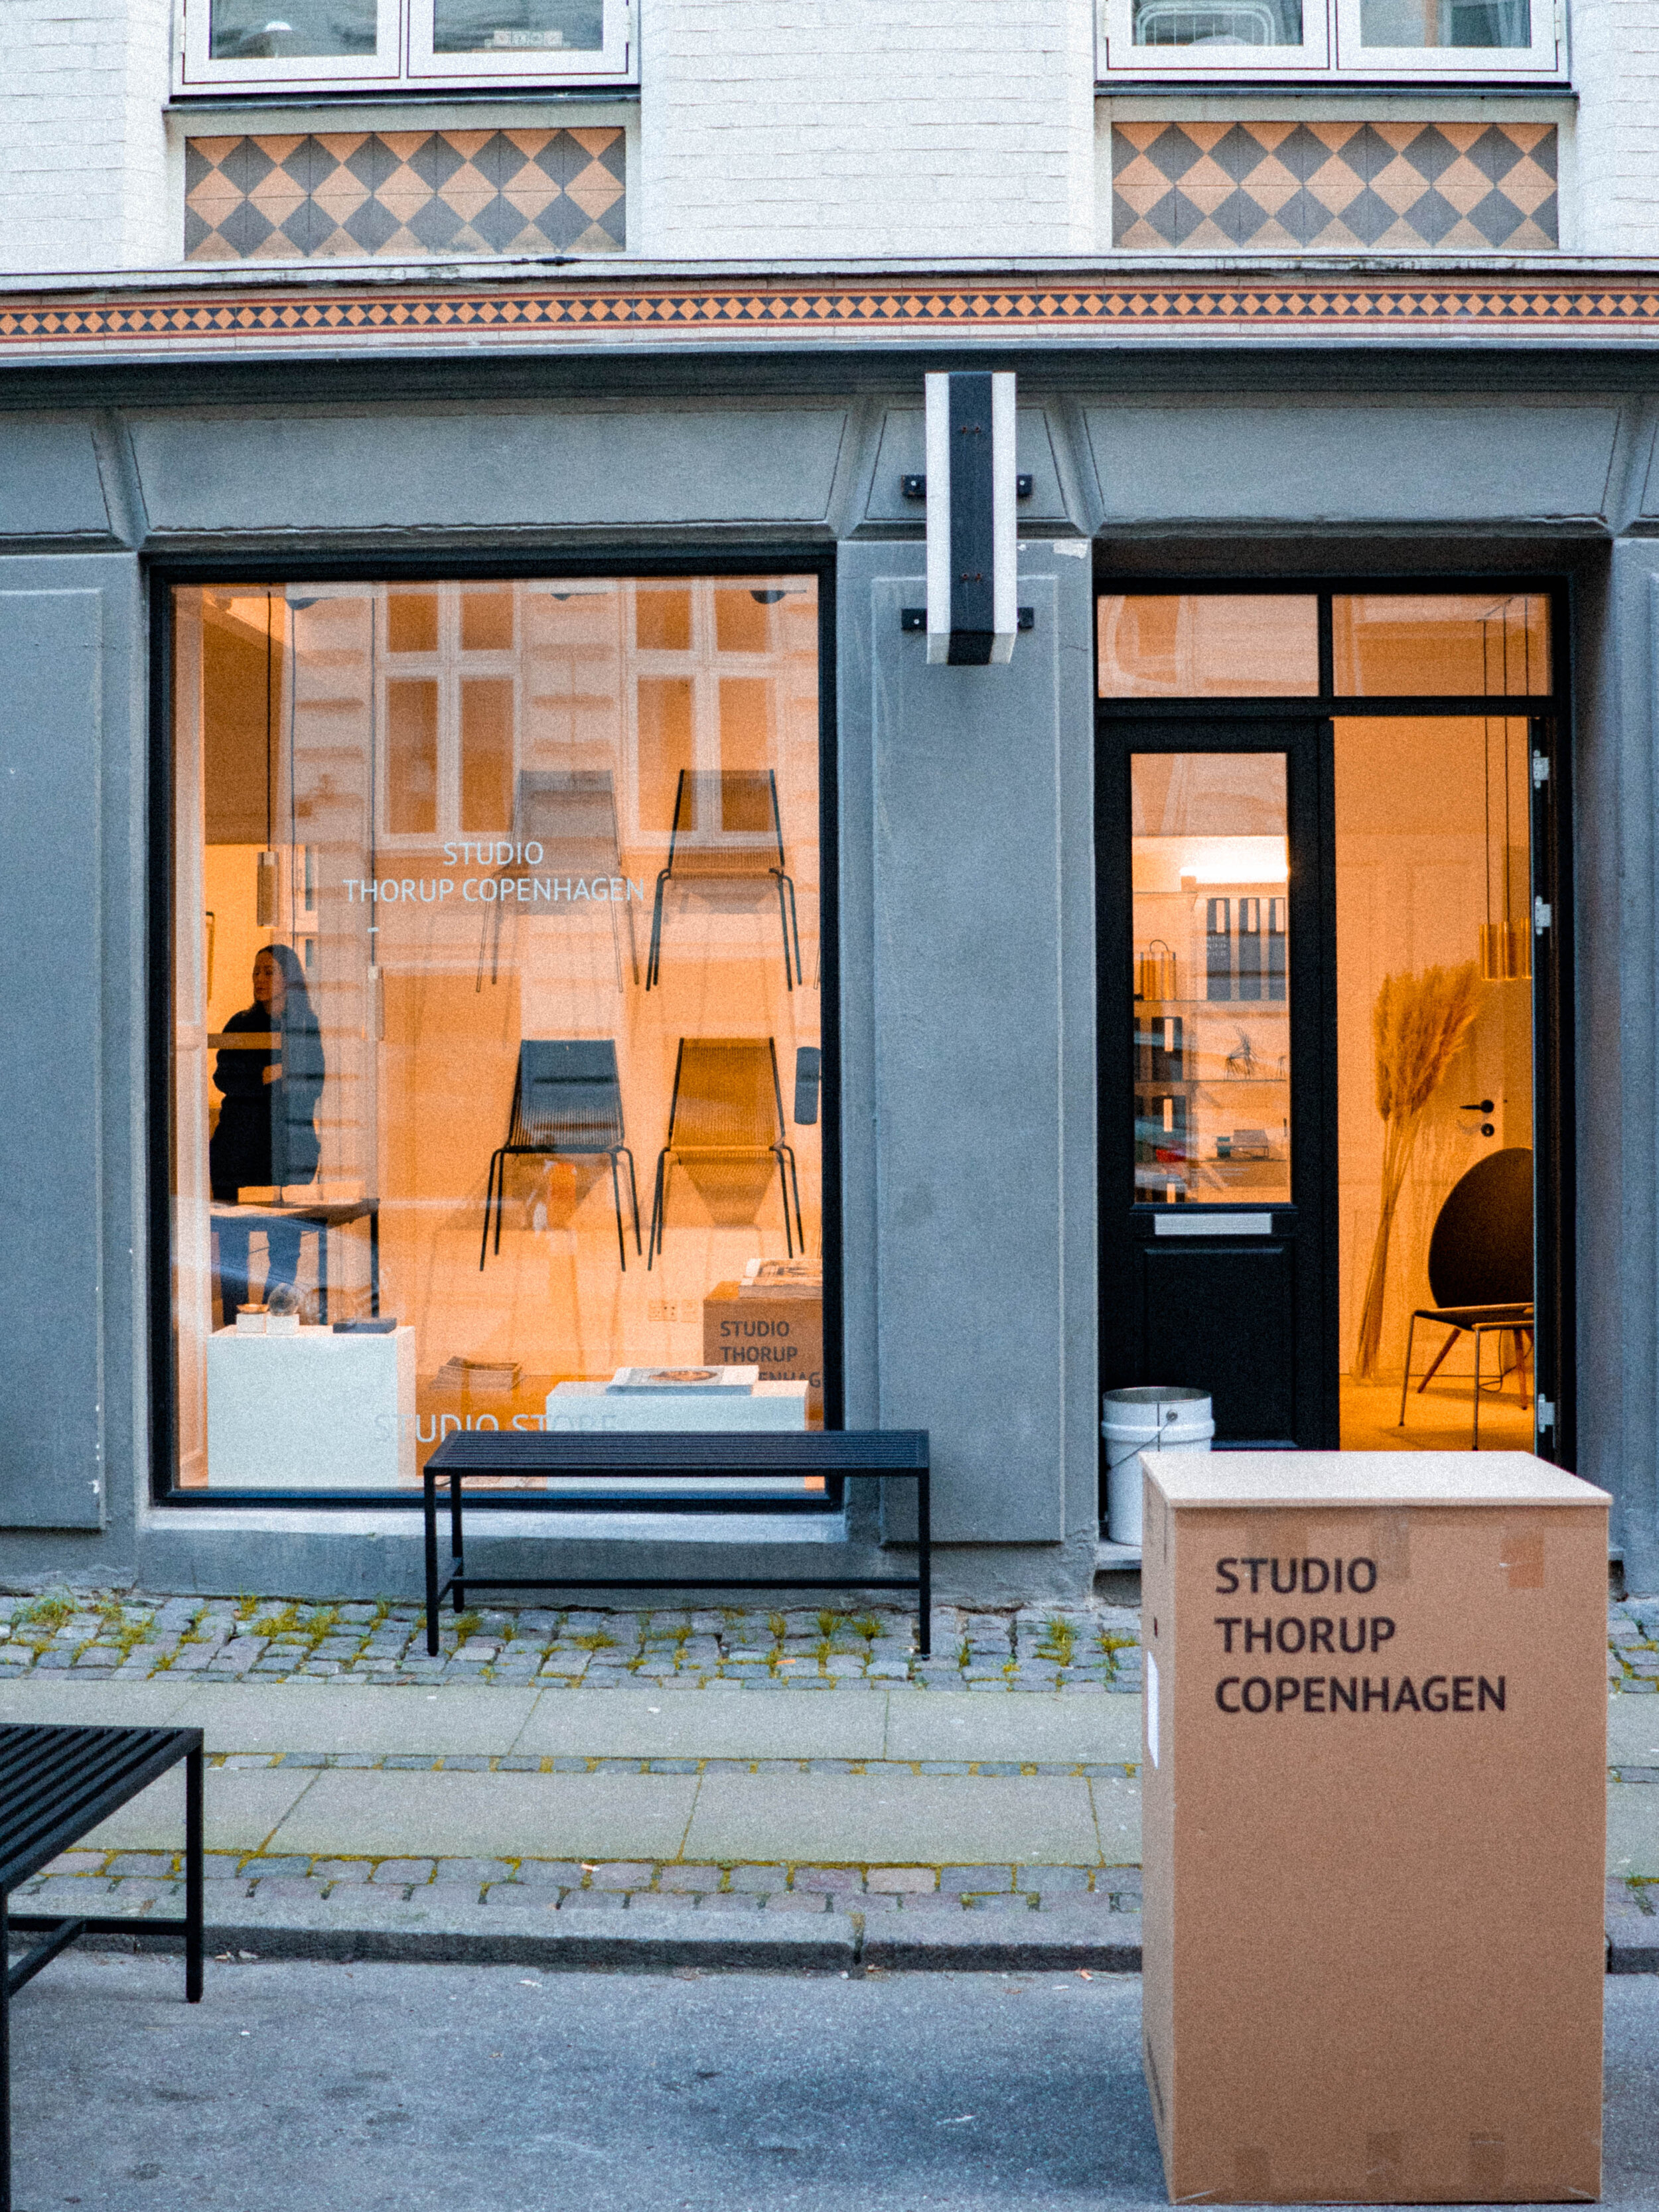 Thorup Copenhagen Studio Store located in the heart of Vesterbro